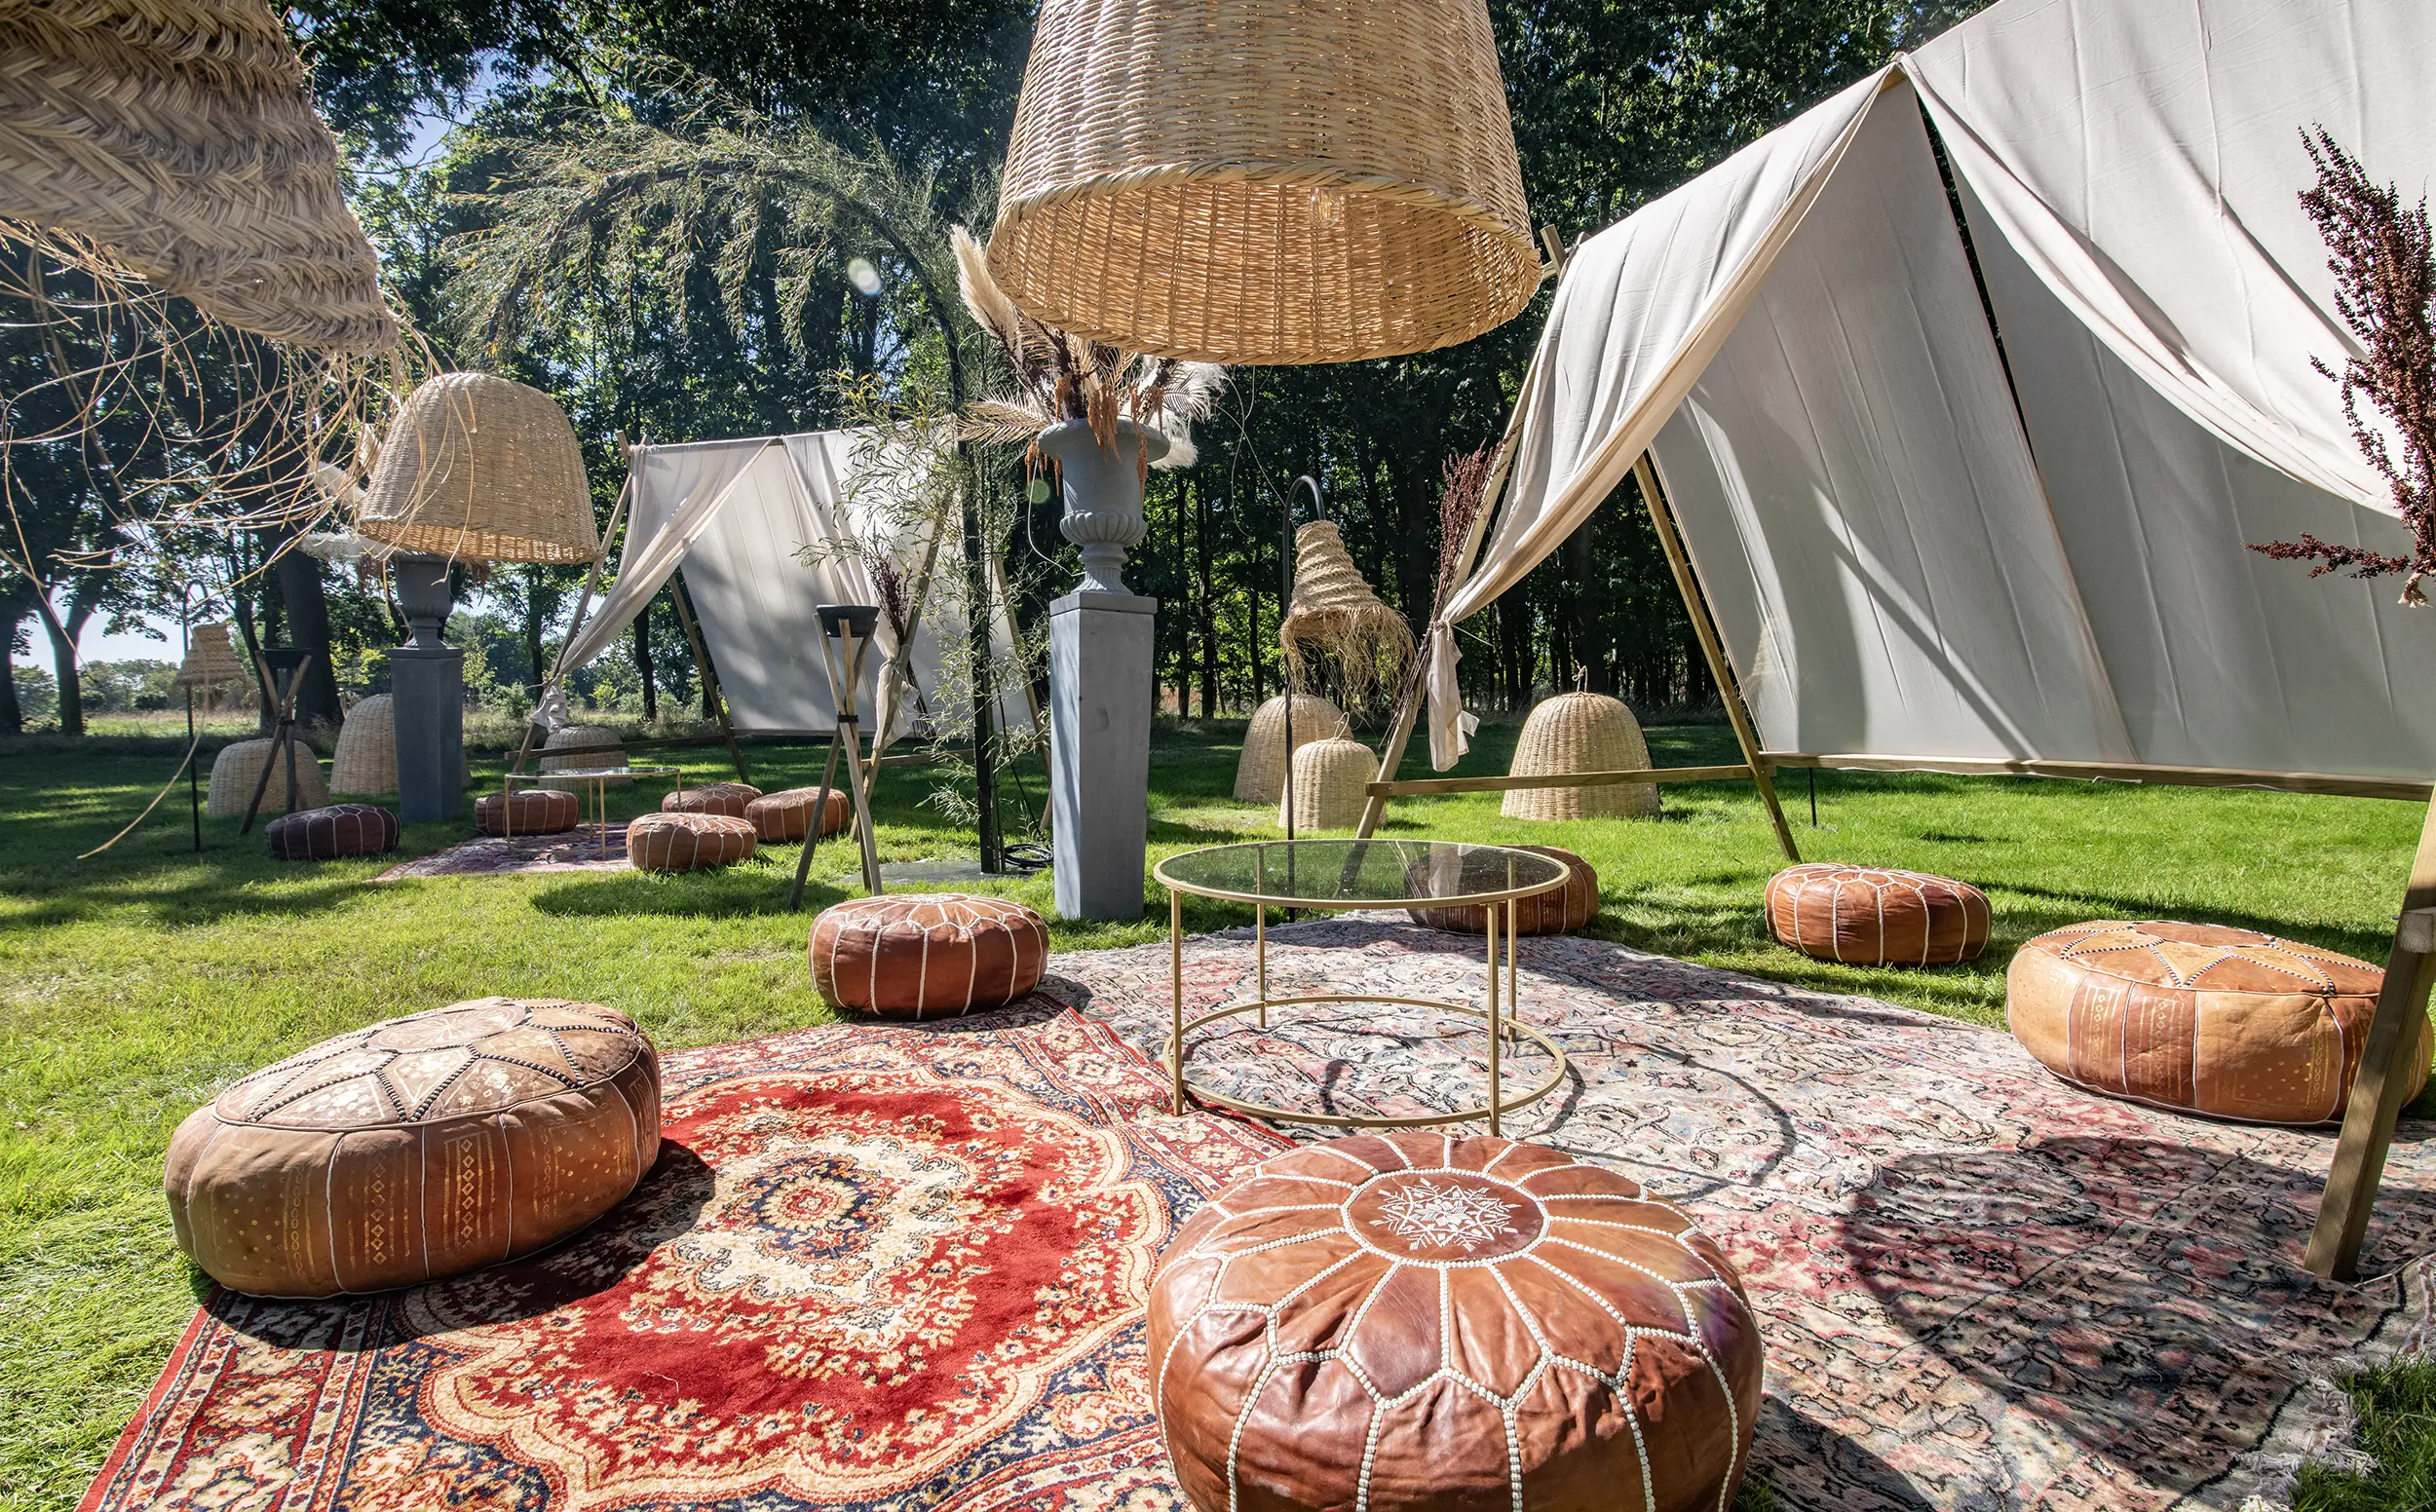 Salon marocains et décorations pour un événement privé organisé par le Groupe Silam dans les jardins d'un château.